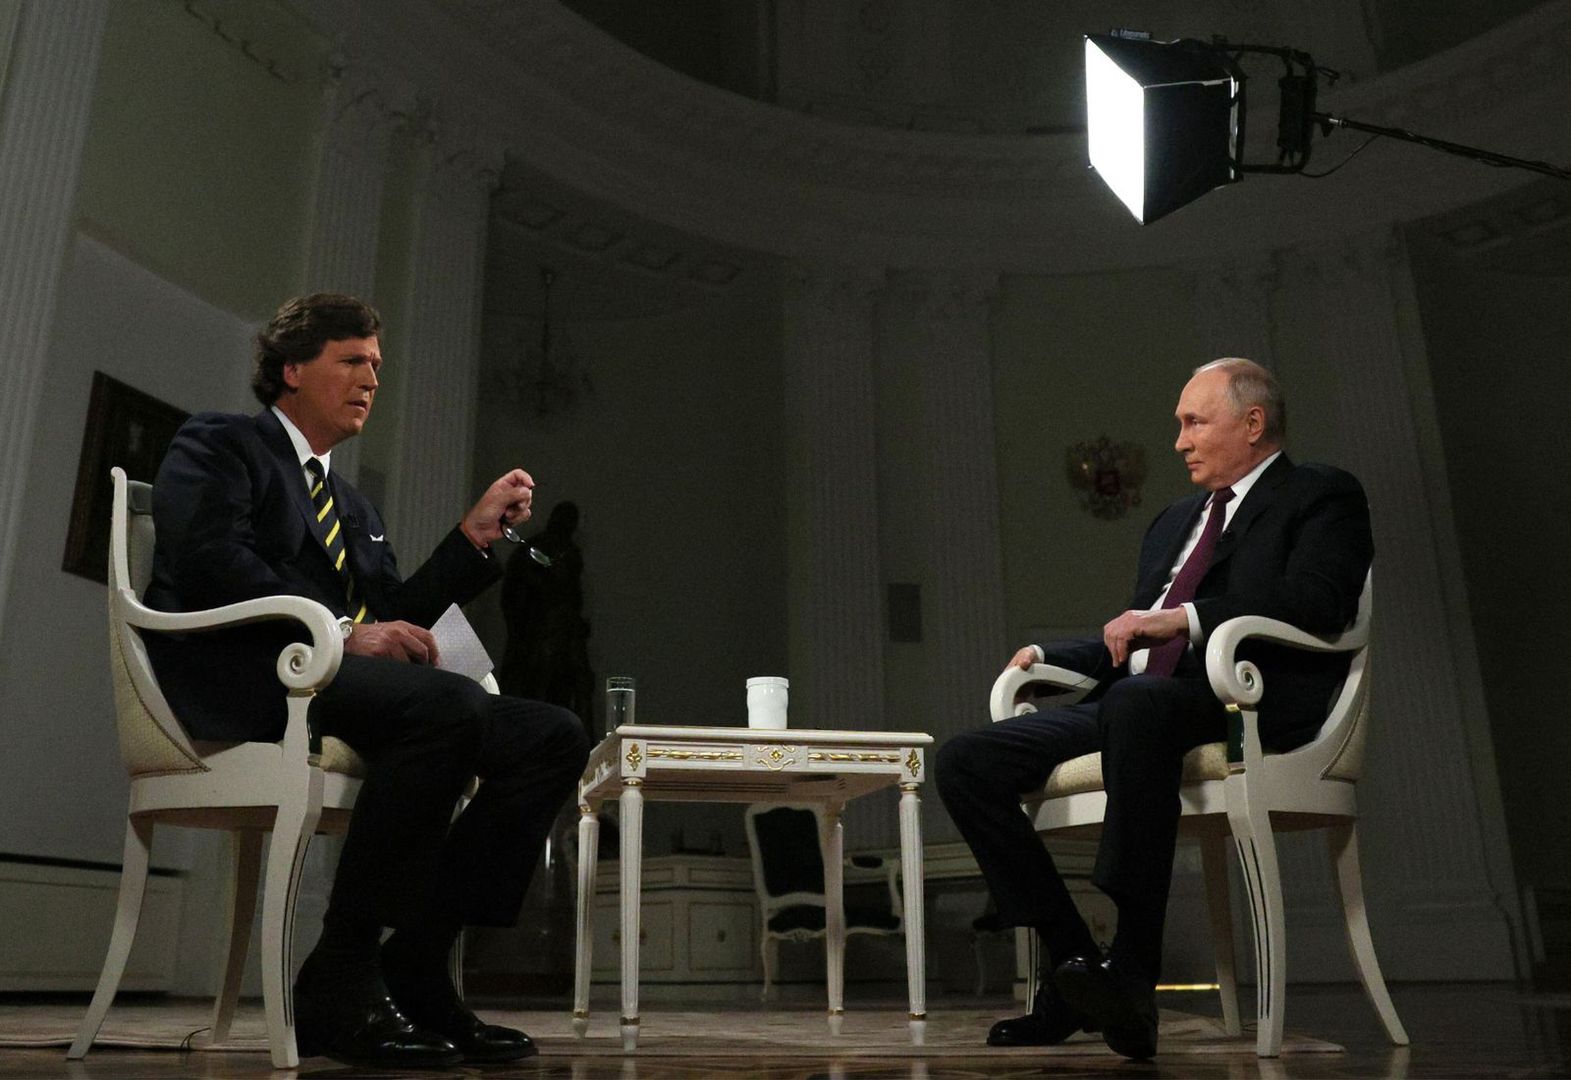 Putin nie wytrzymał podczas wywiadu. Wyrwały mu się niecenzuralne słowa